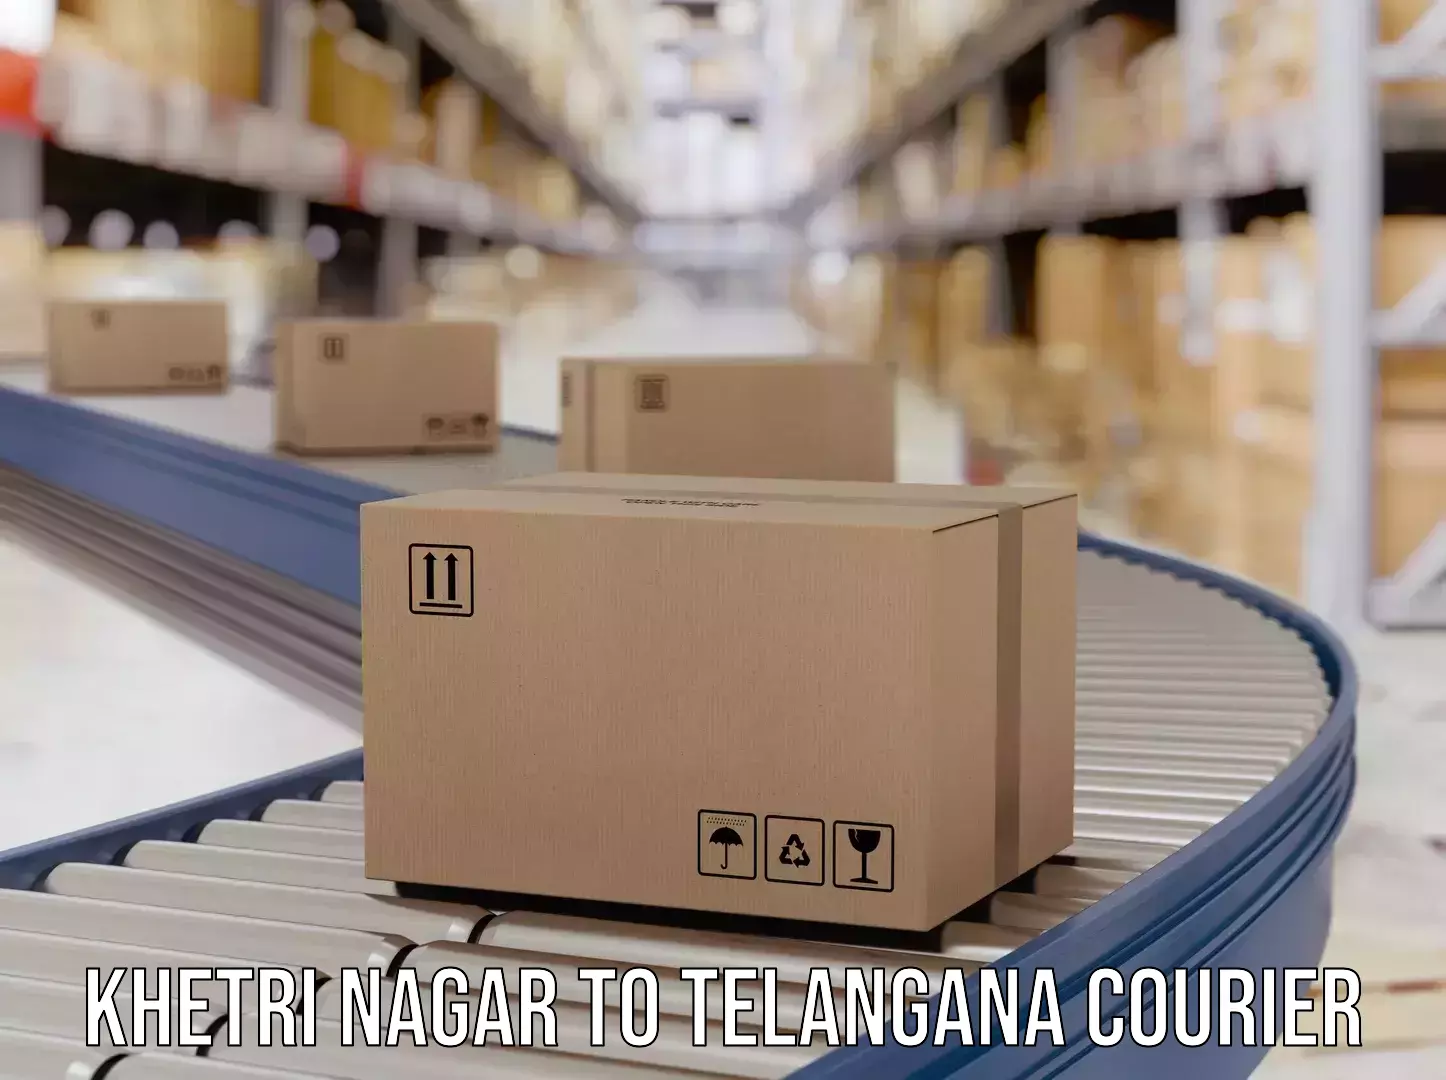 Premium courier services Khetri Nagar to Tandur